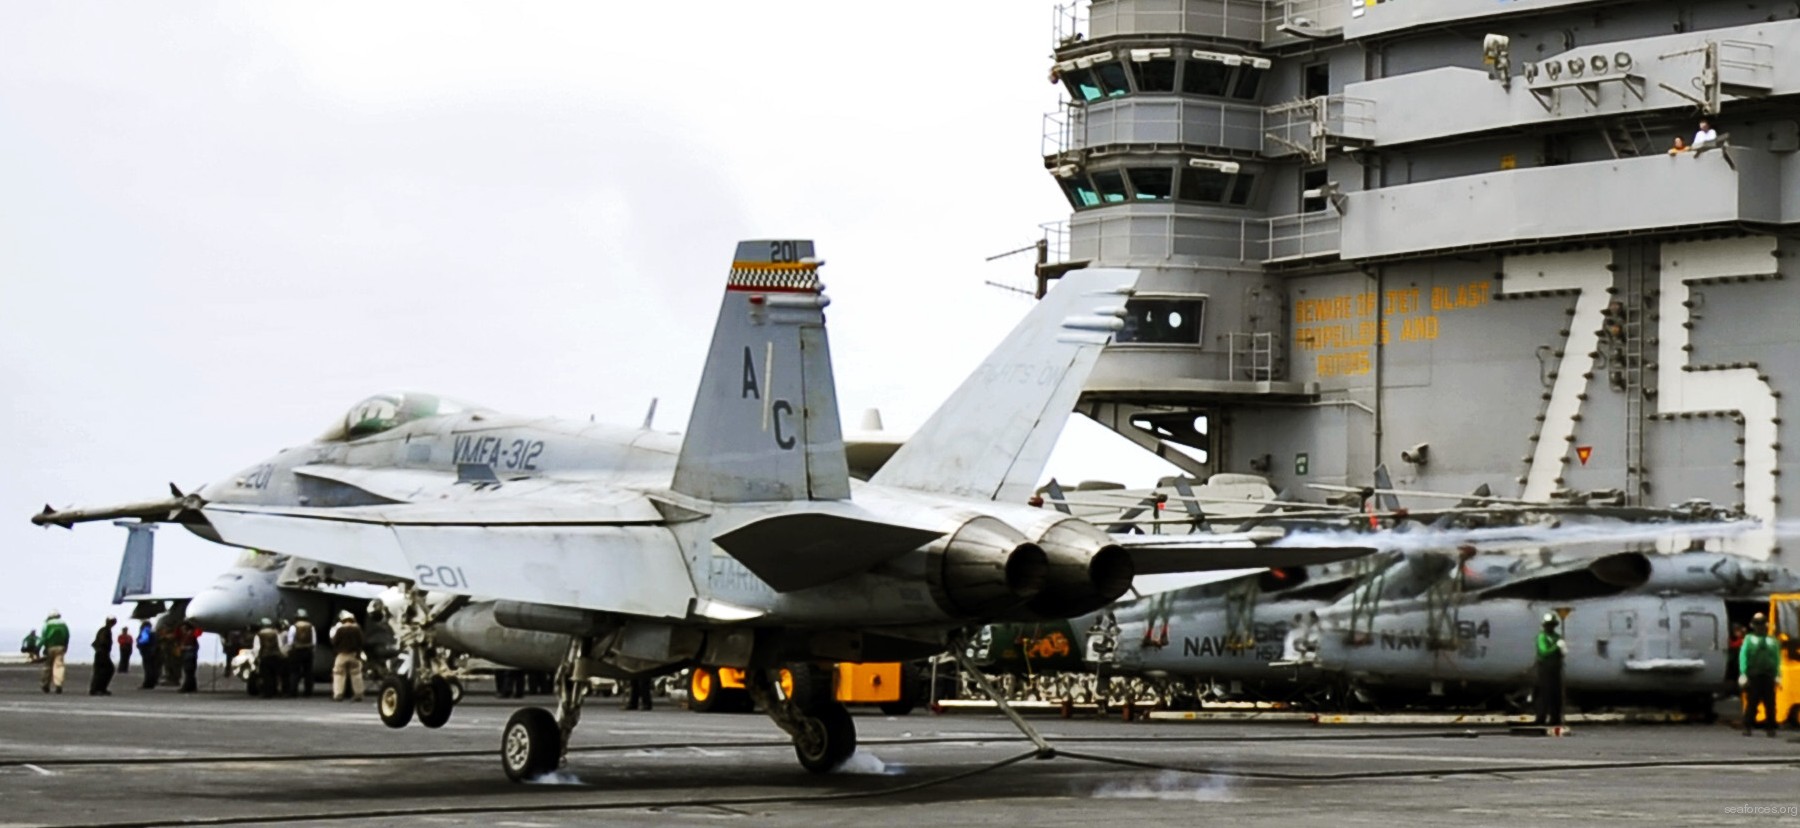 vmfa-312 checkerboards marine fighter attack squadron usmc f/a-18c hornet cvw-3 uss harry s. truman cvn-75 49